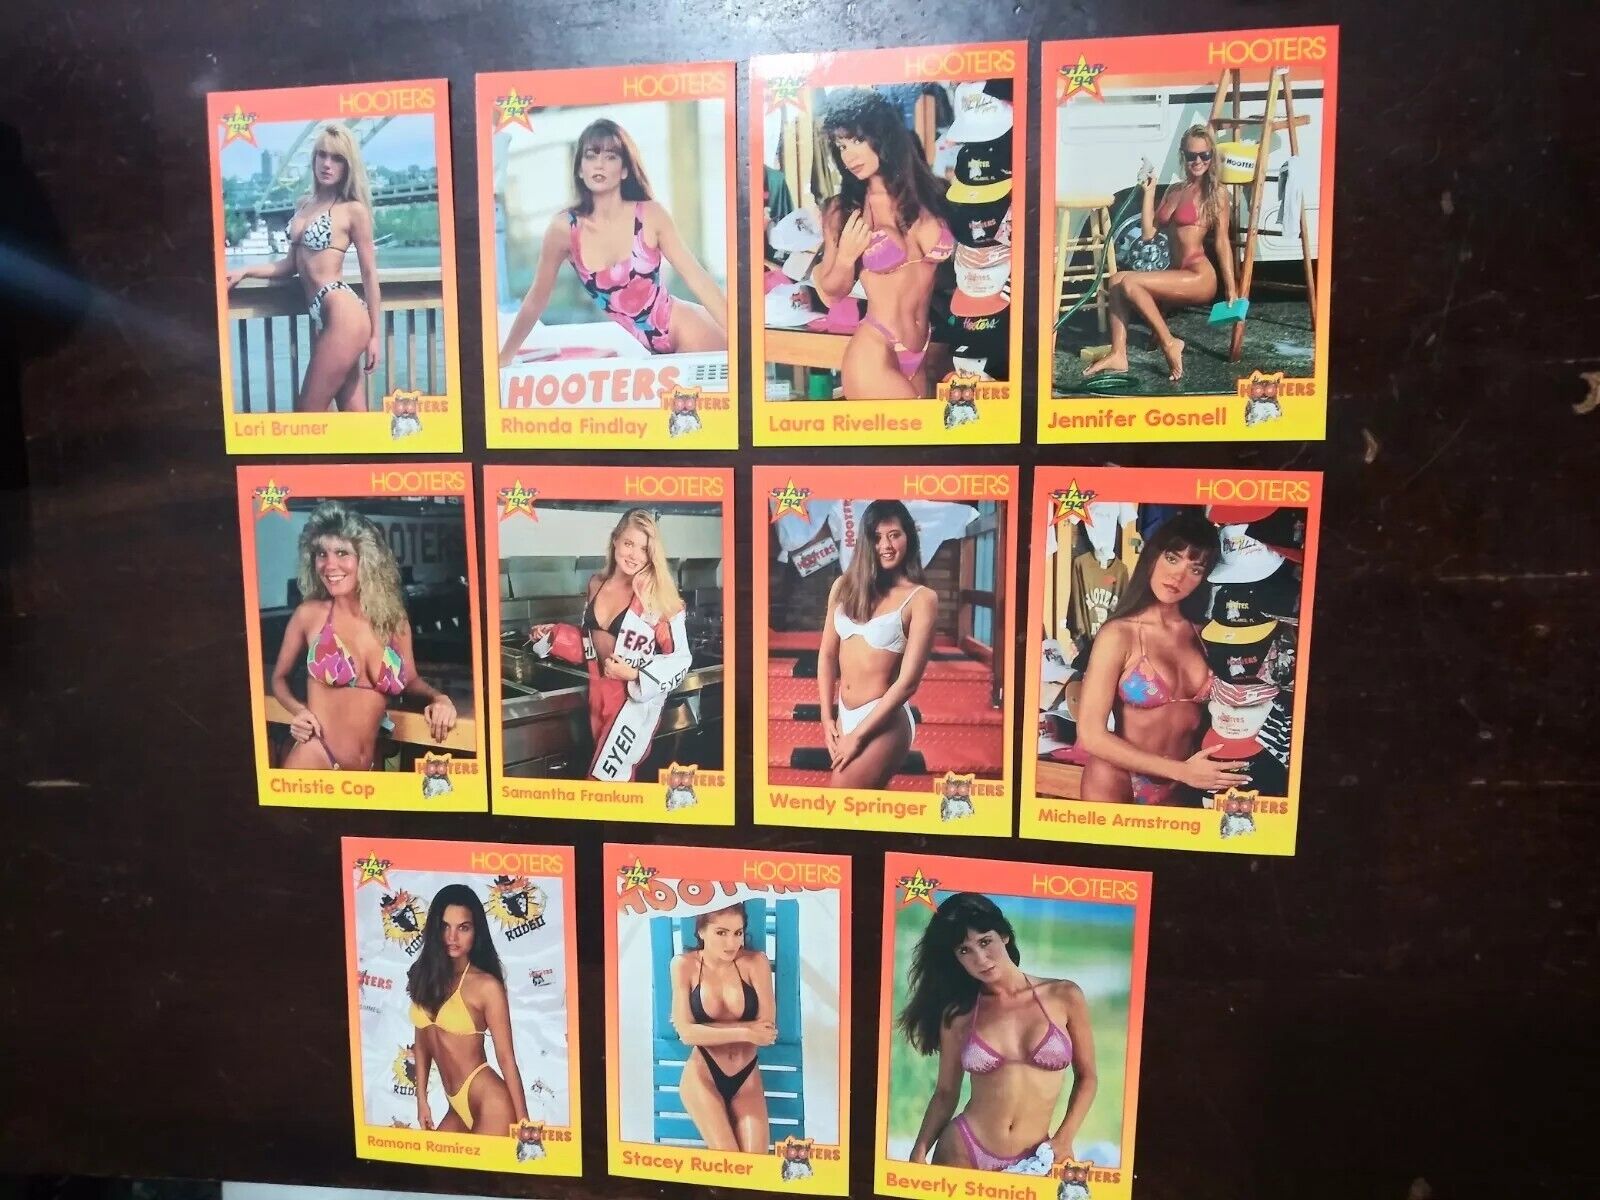 1992 Star Co. (Hooters Calendar Girls)